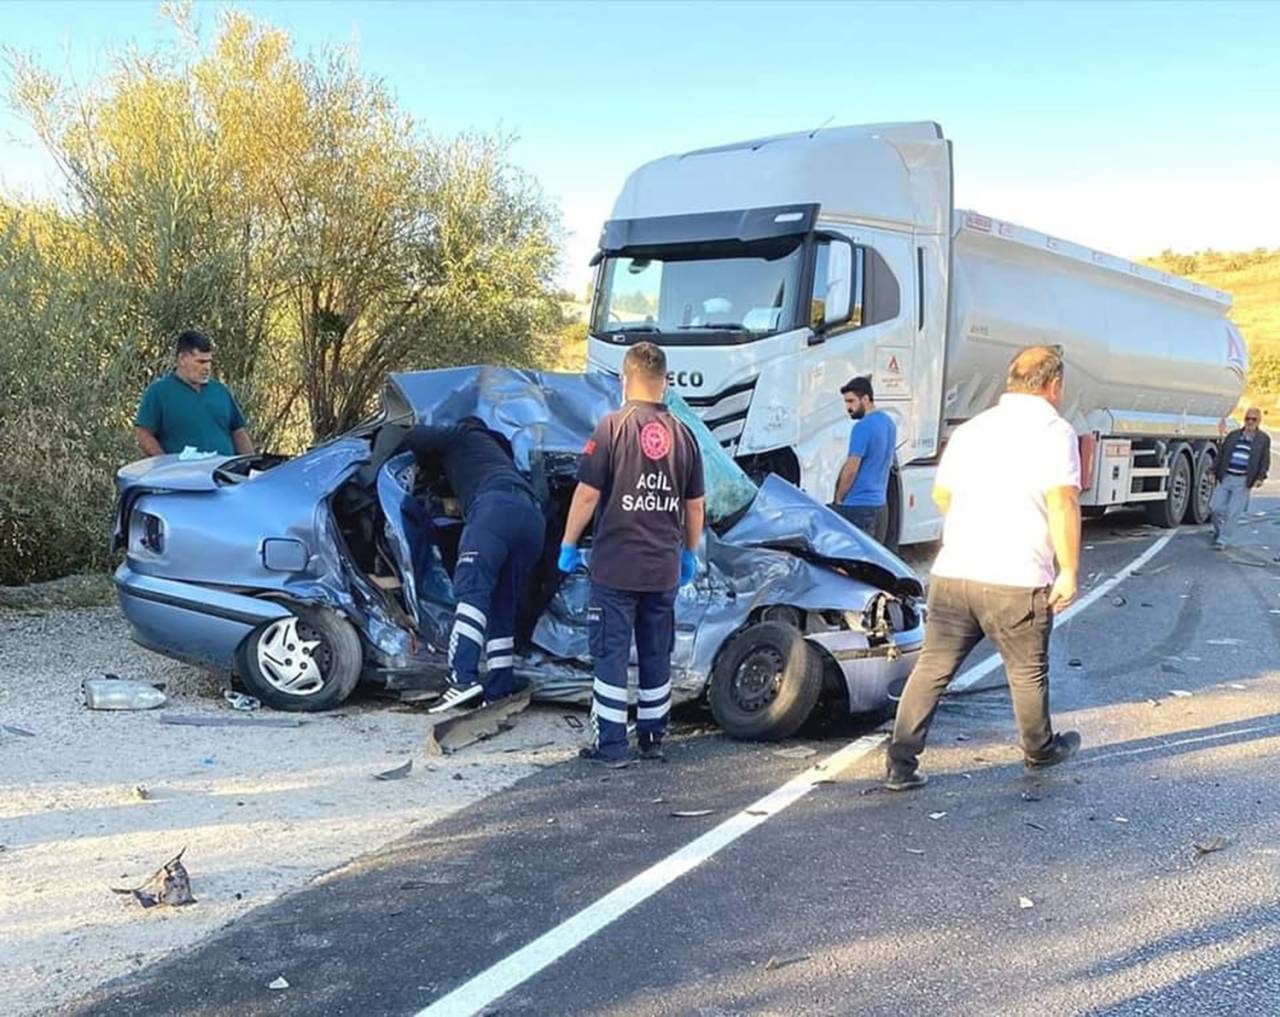 Antalya'da Otomobil İle Tır, Kafa Kafaya Çarpıştı: 4 Ölü, 1 Yaralı